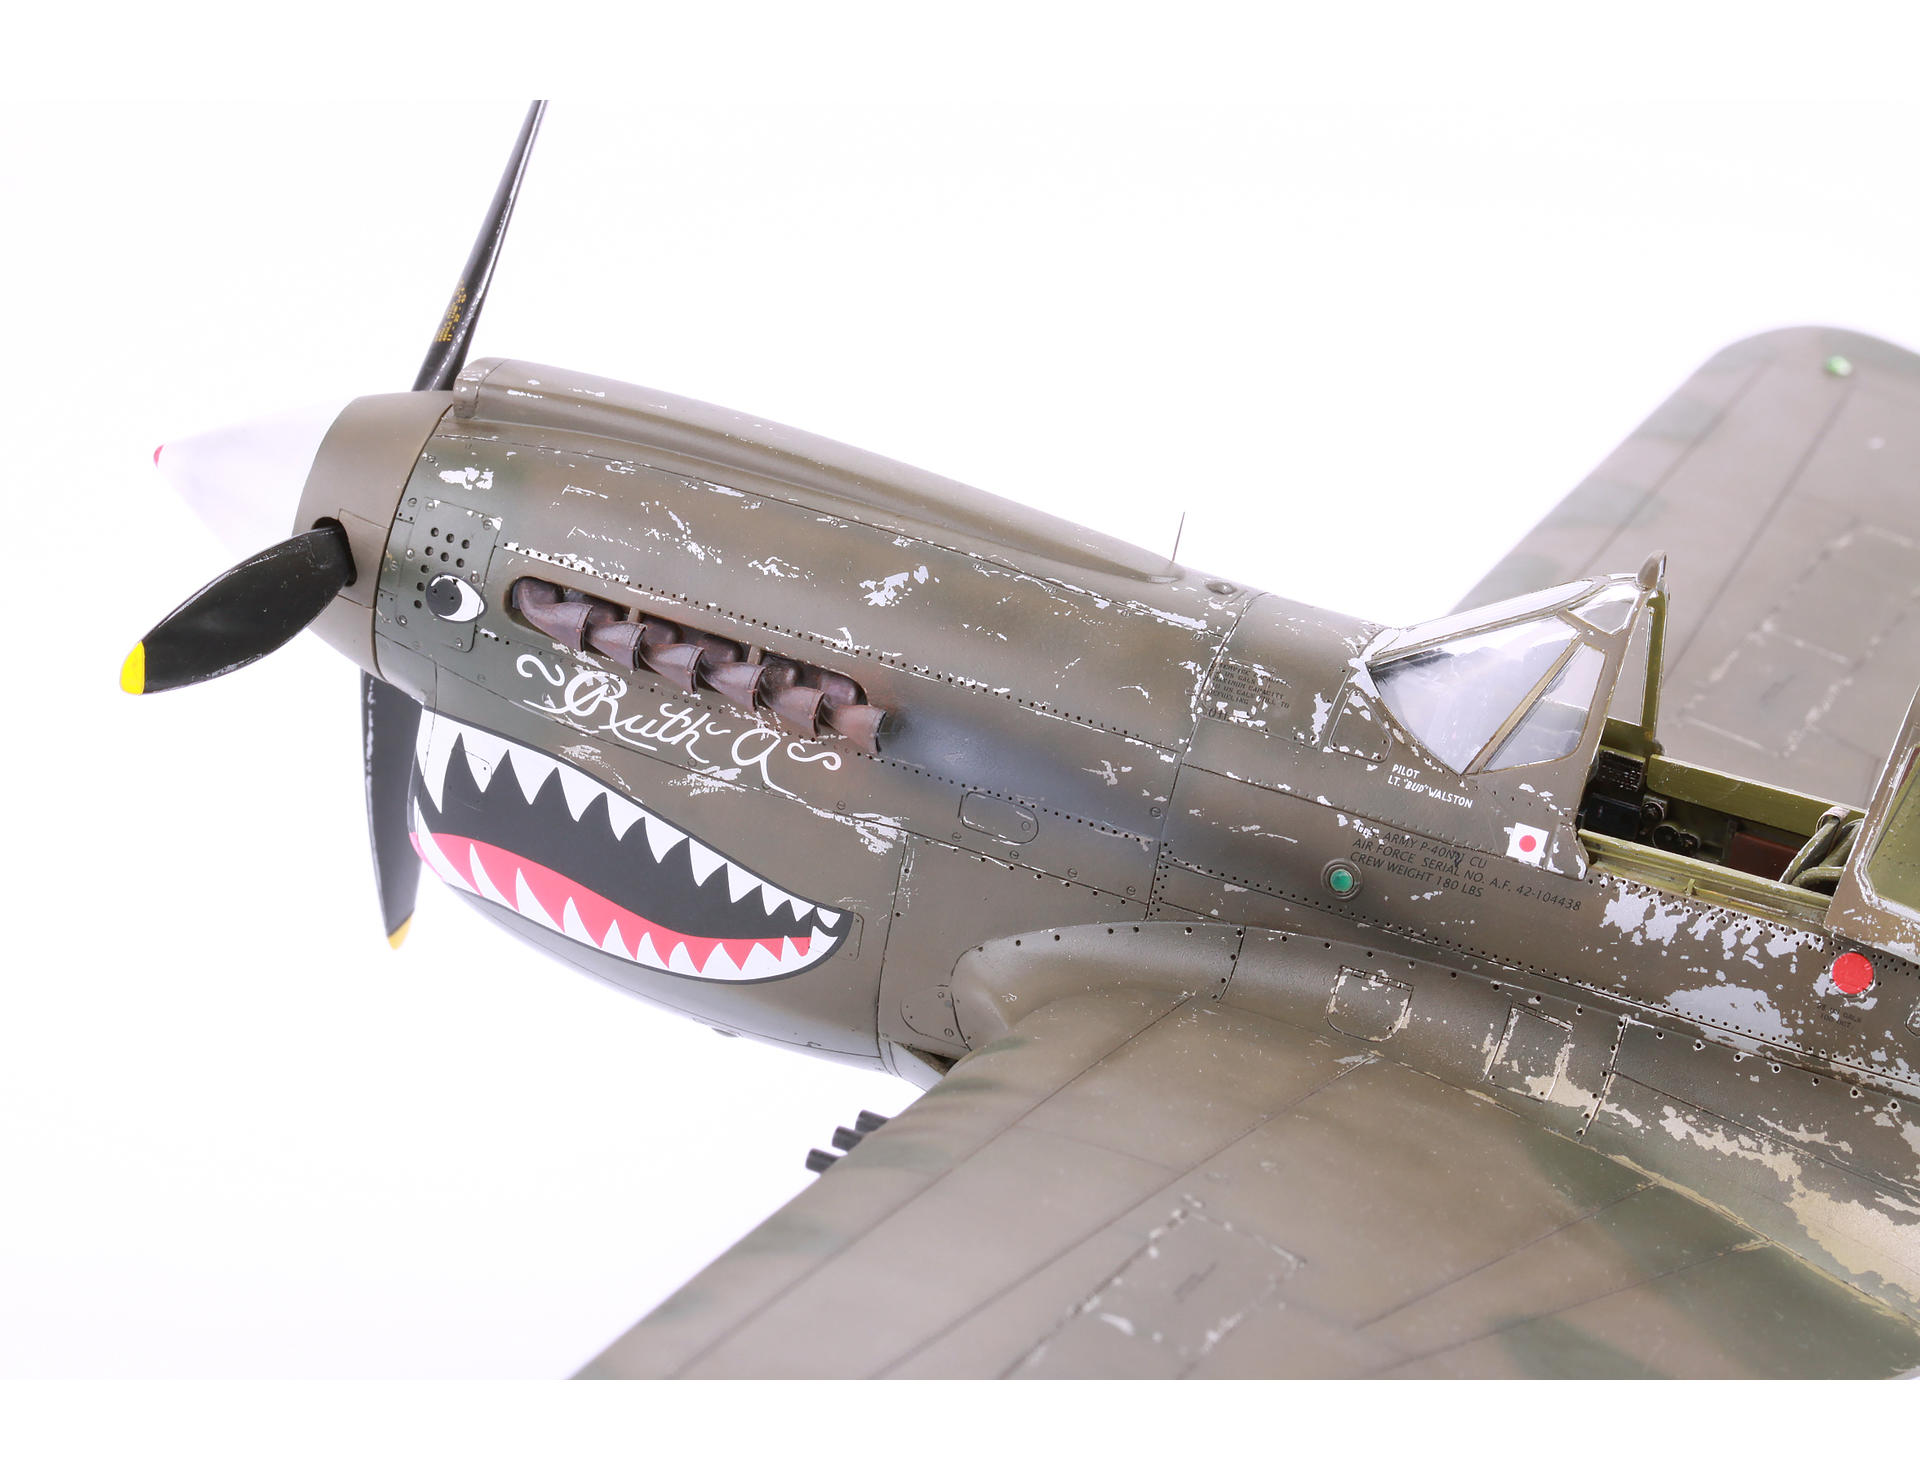 Eduard 1/32 mask for P-40E Warhawk Hasegawa kit #JX080